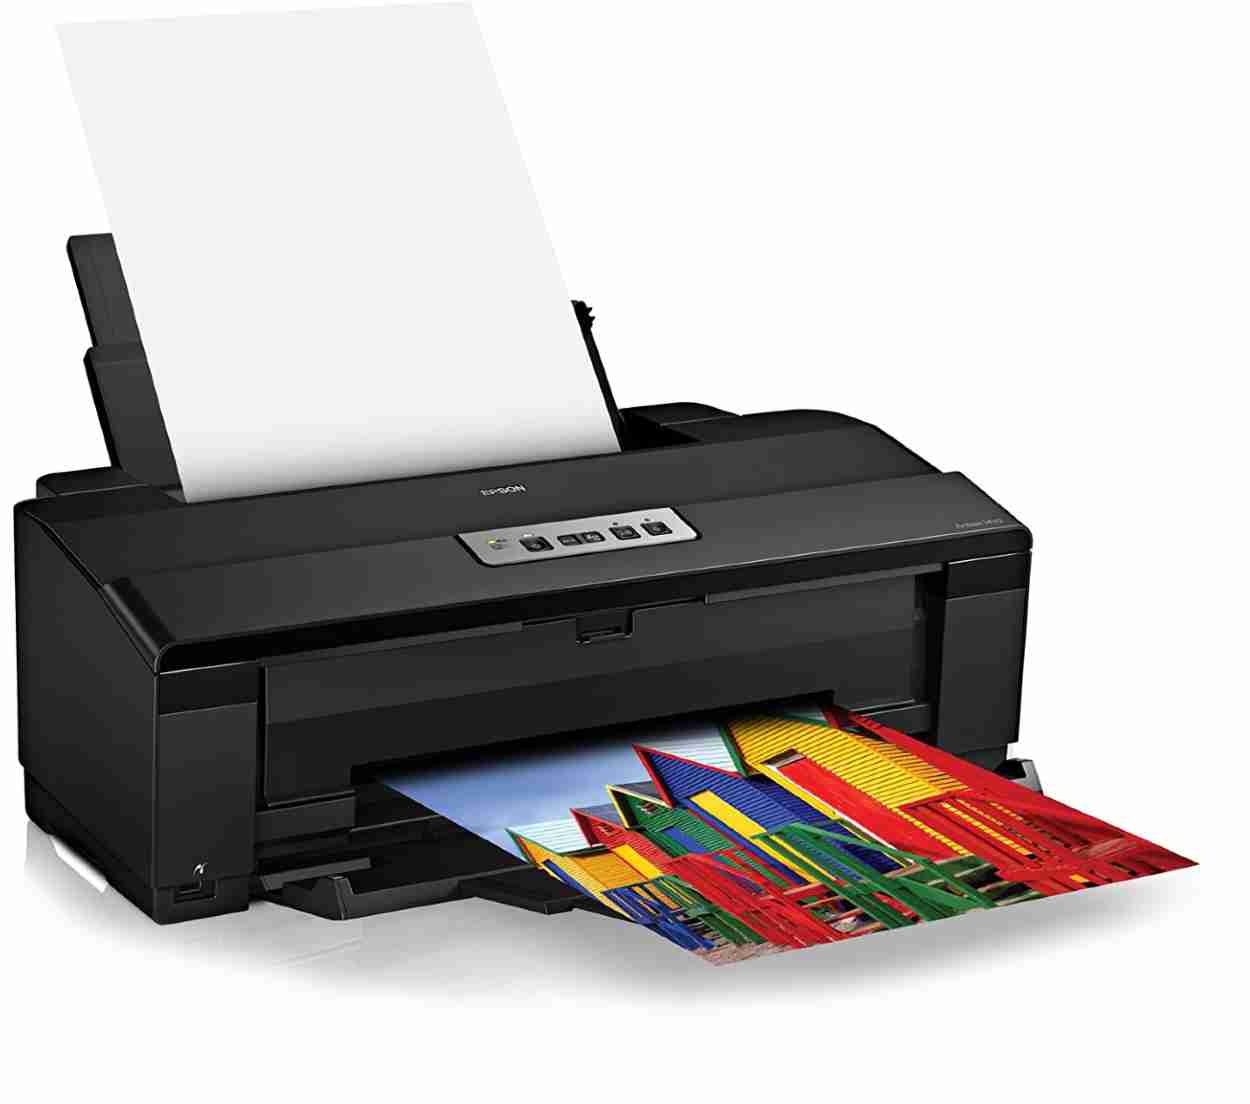 Epson Artisan 1430 Printer